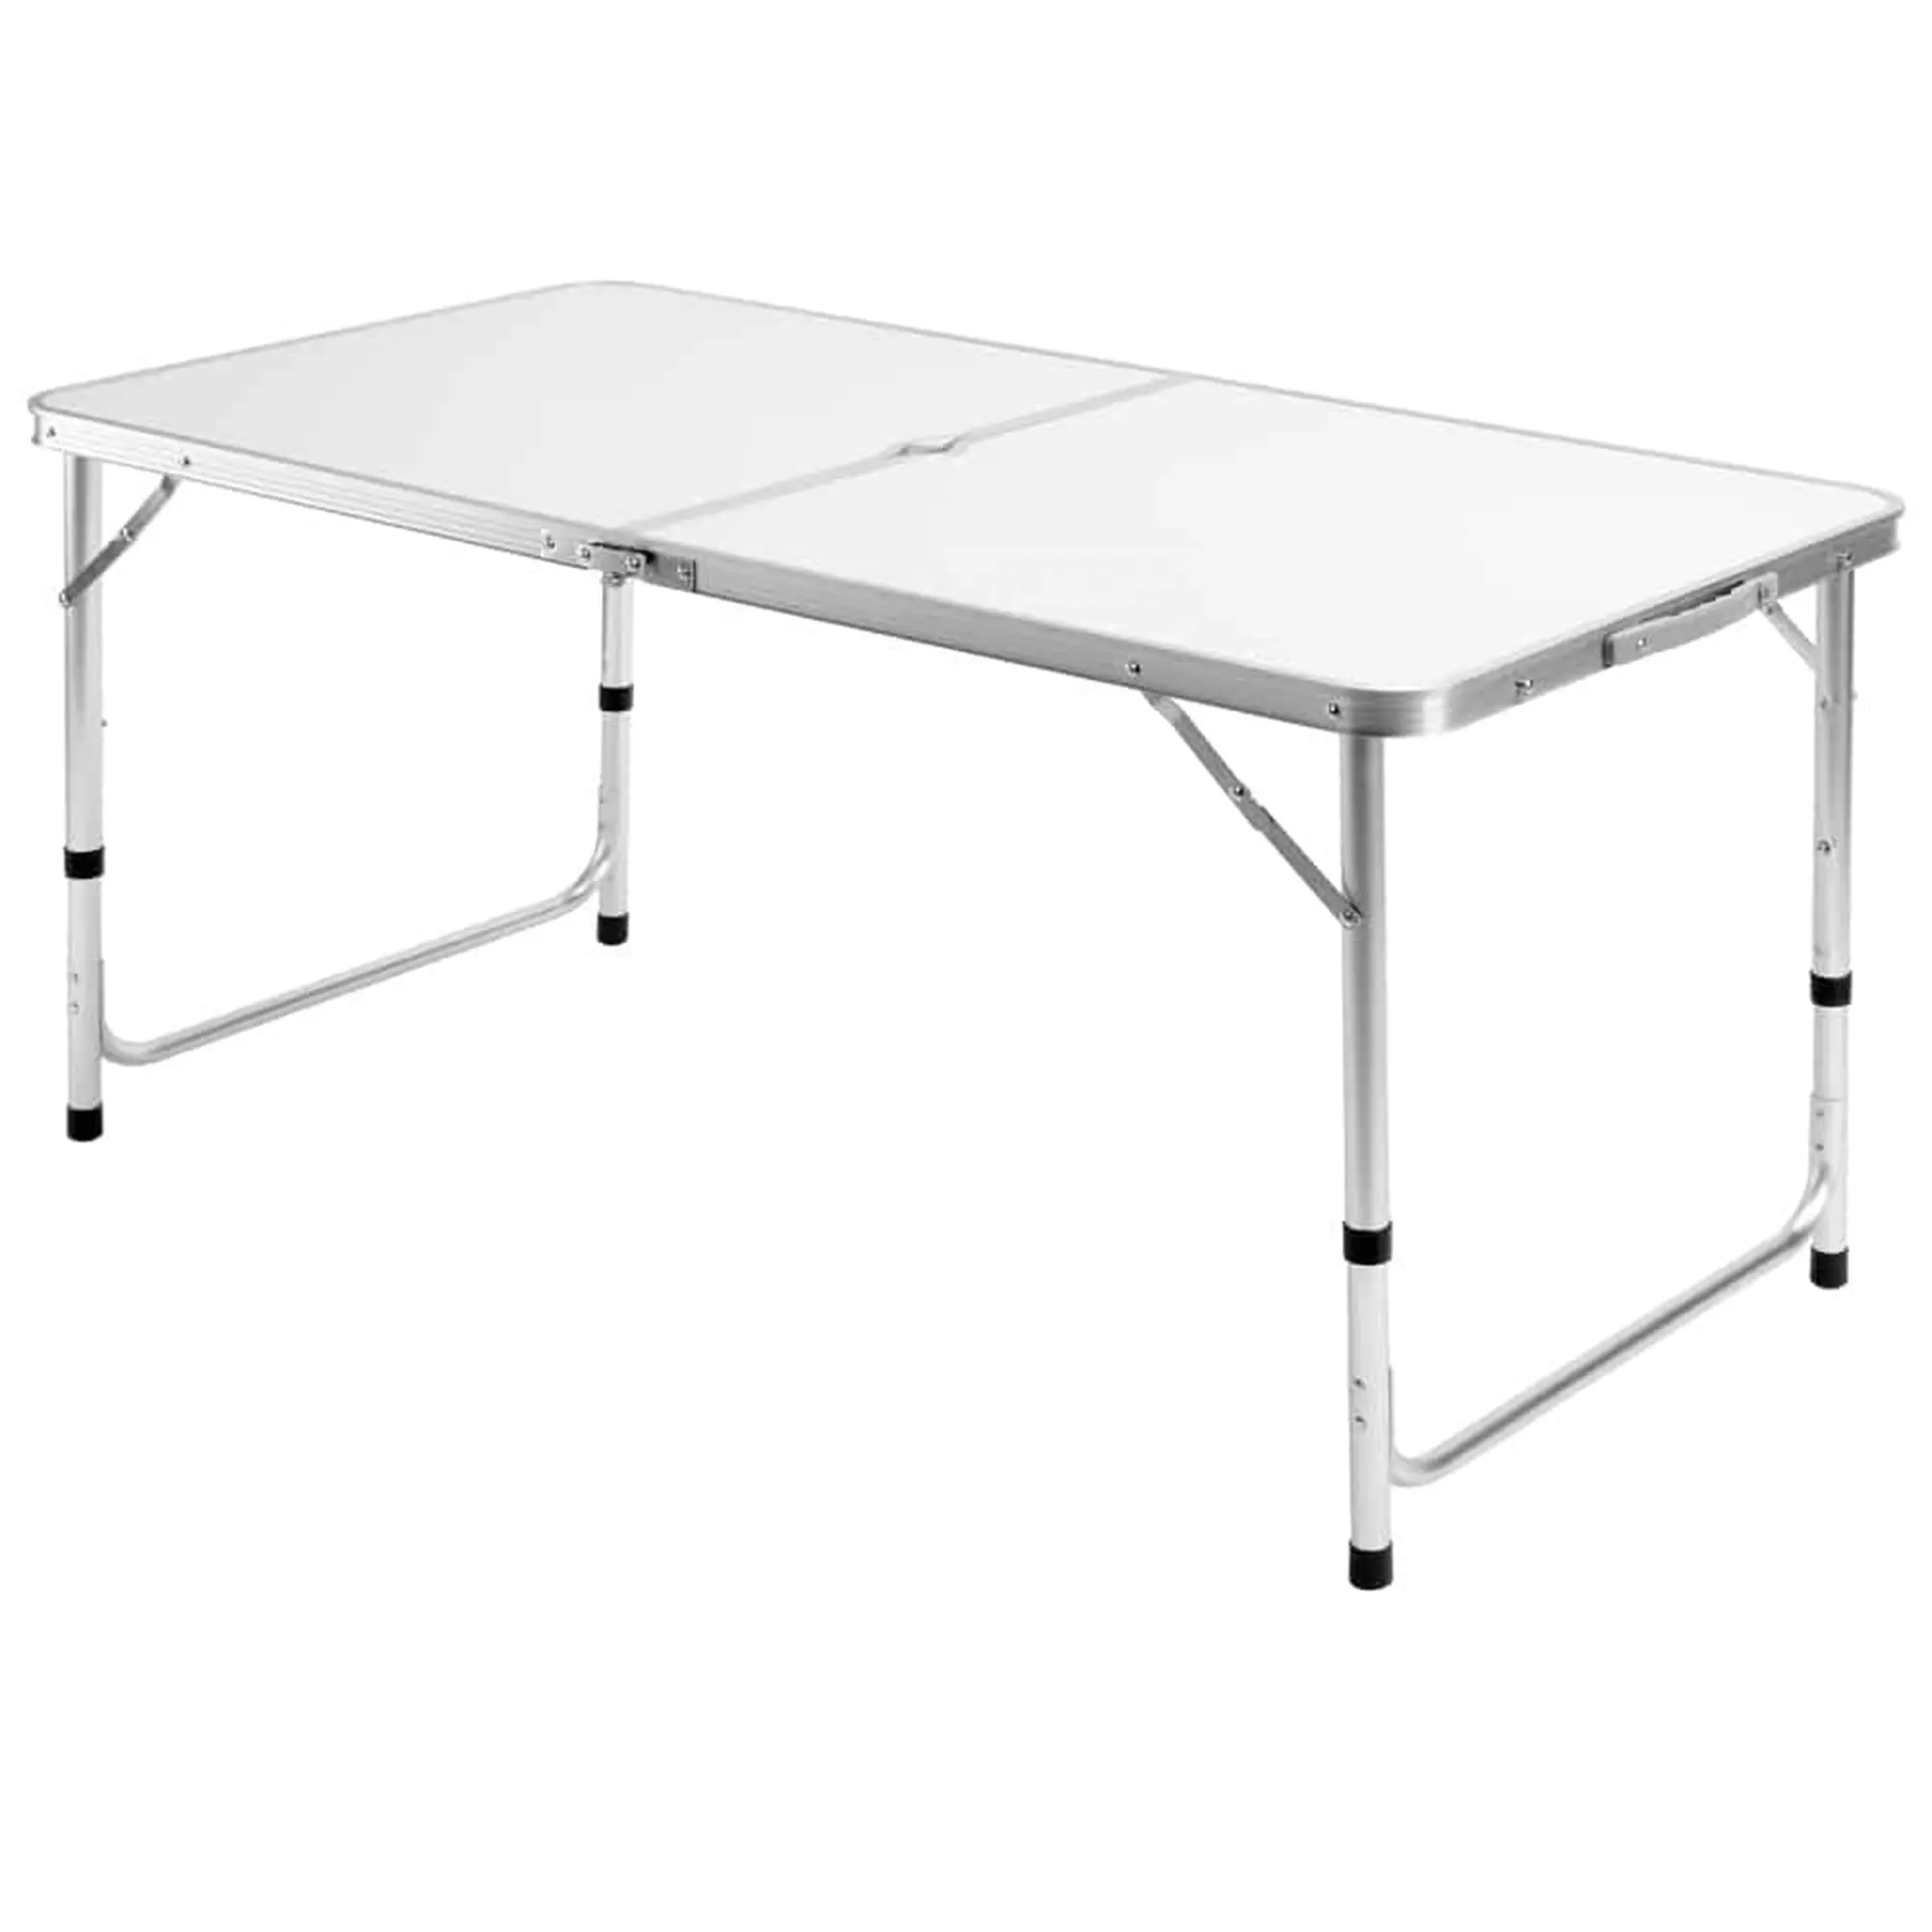 CYEN venda quente leve heavy duty altura impermeável ajustável retangular 4ft alumínio dobrável piquenique camping tabela